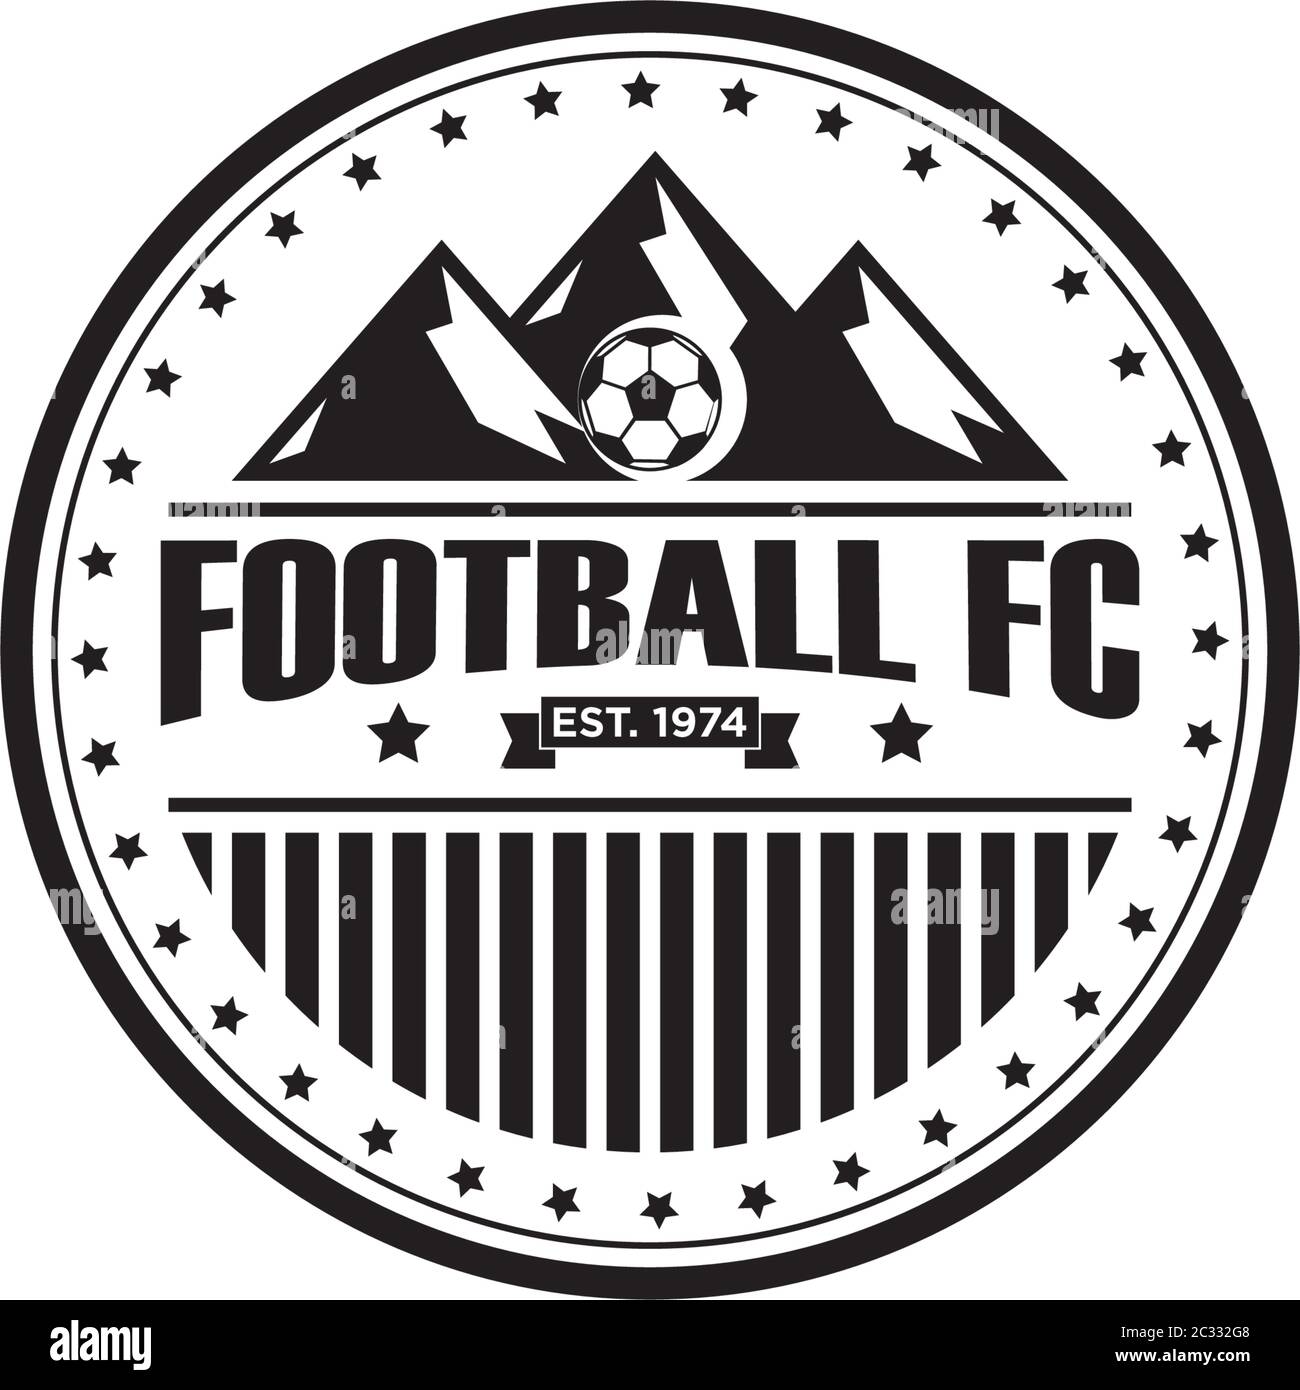 Football Club Logo Design Template, mountain sport logo inspiration Stock Vector